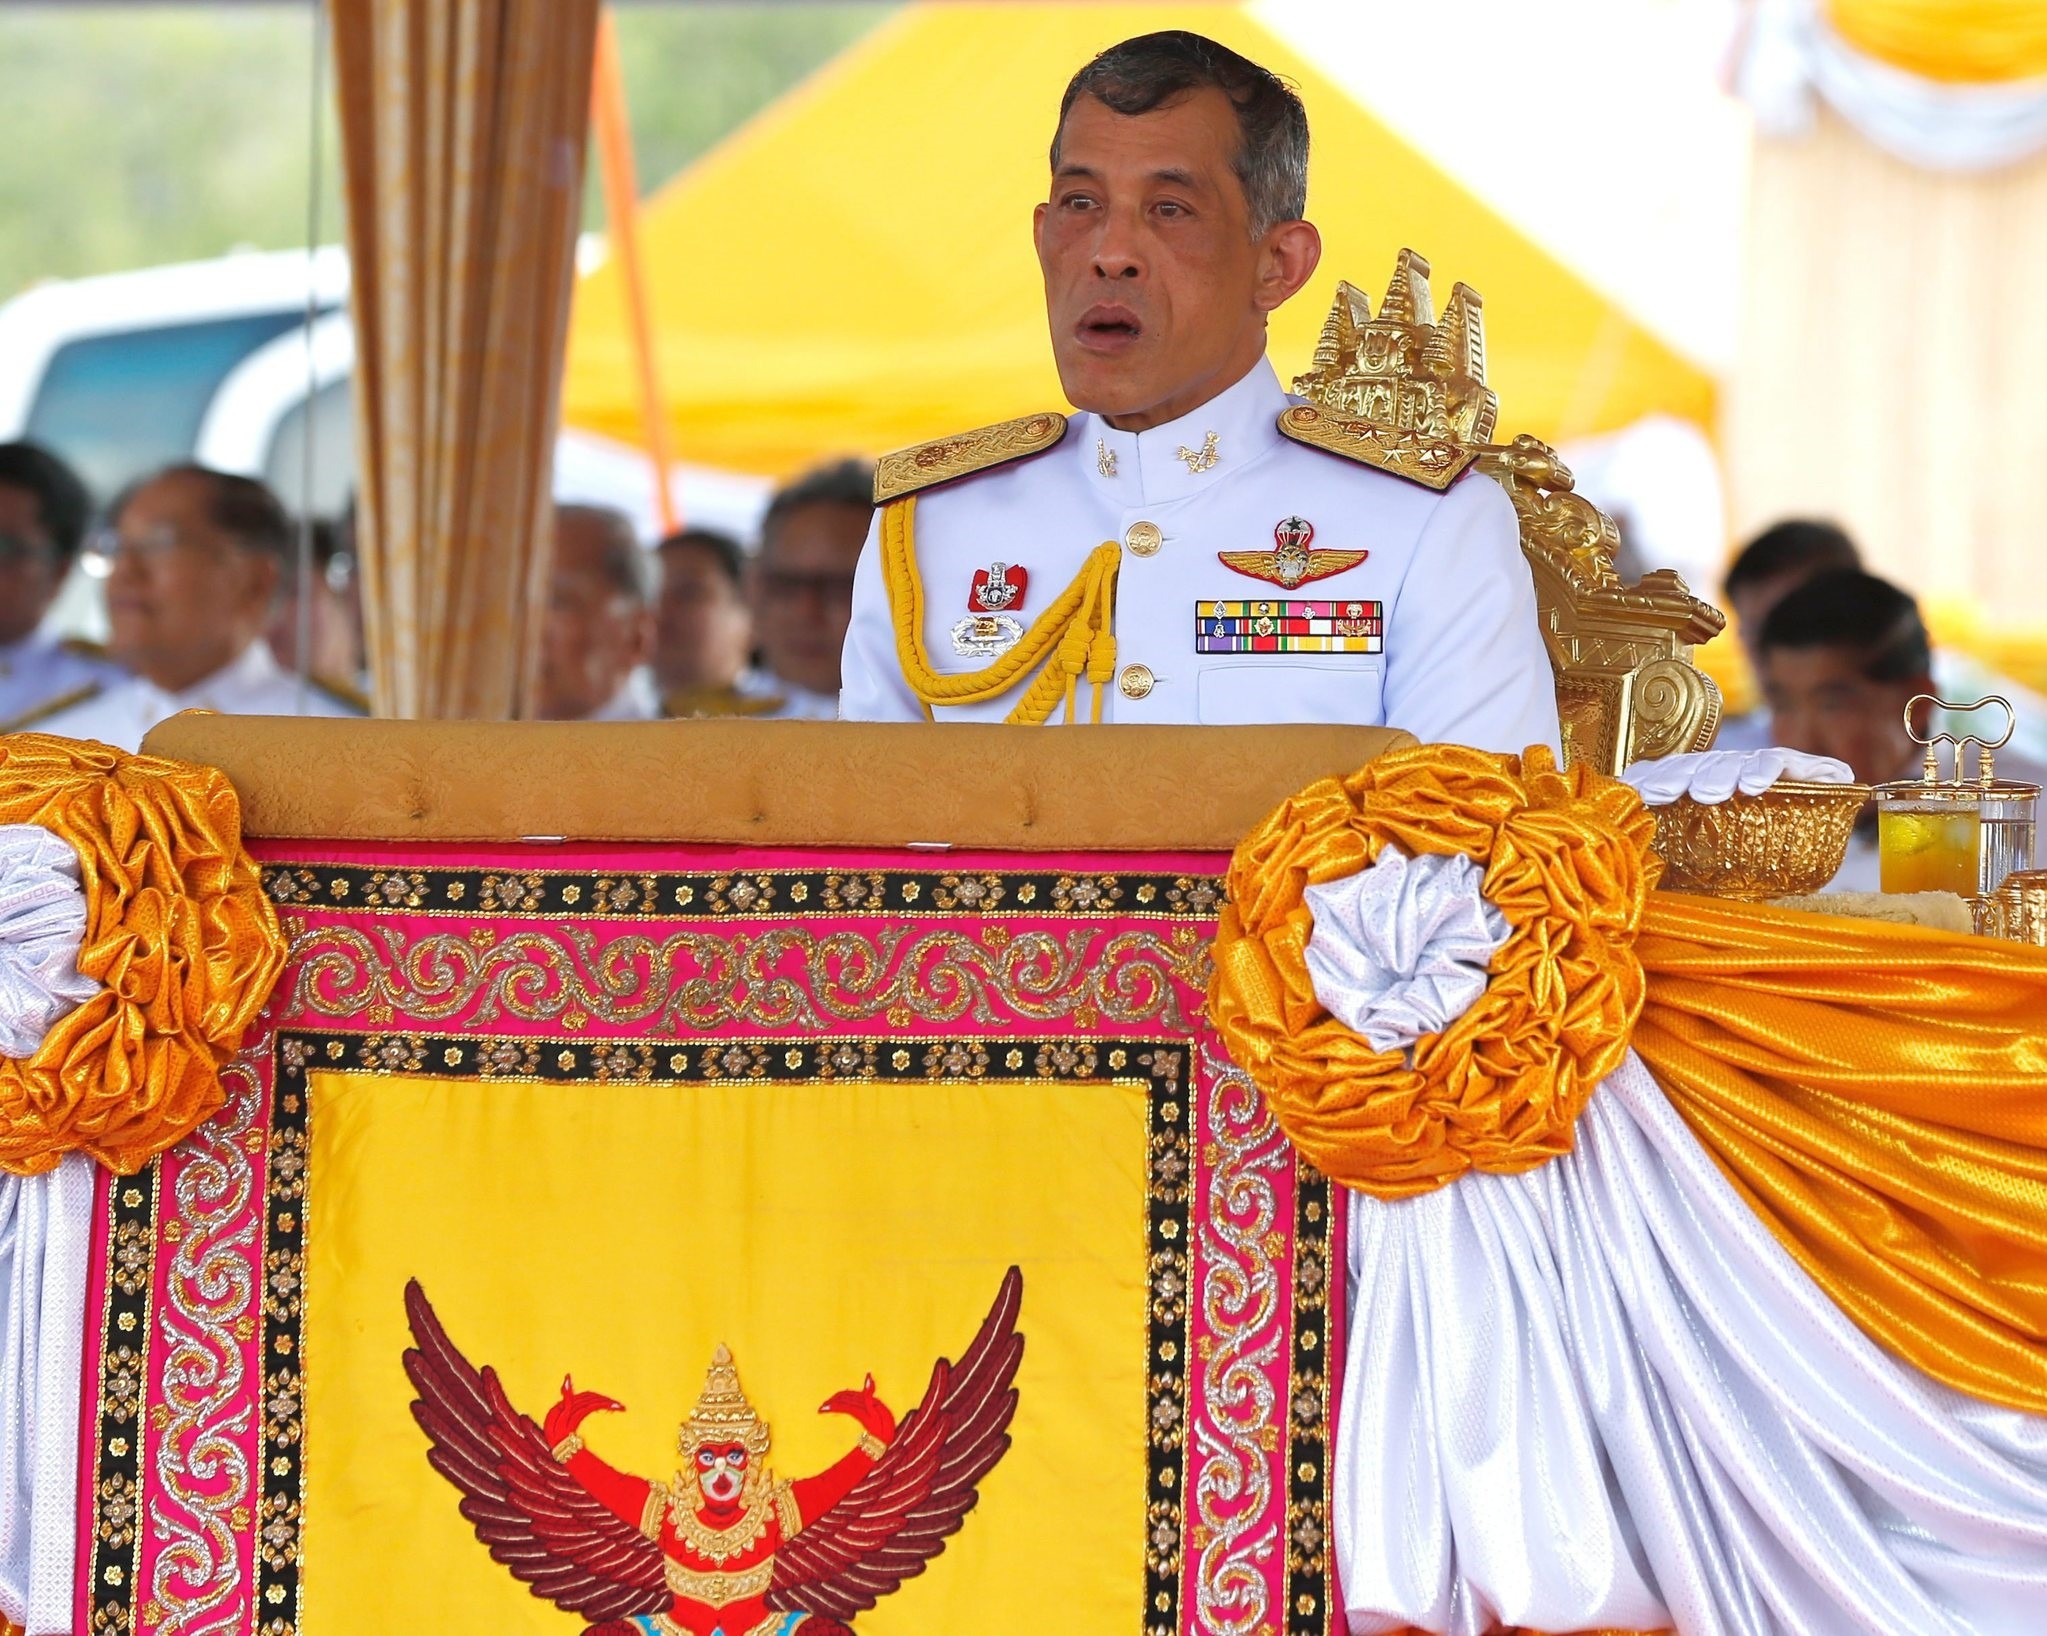 Thai Crown Prince Maha Vajiralongkorn presiding over the Royal Ploughing ceremony at Sanam Luang in Bangkok, Thailand. (EPA Photo)